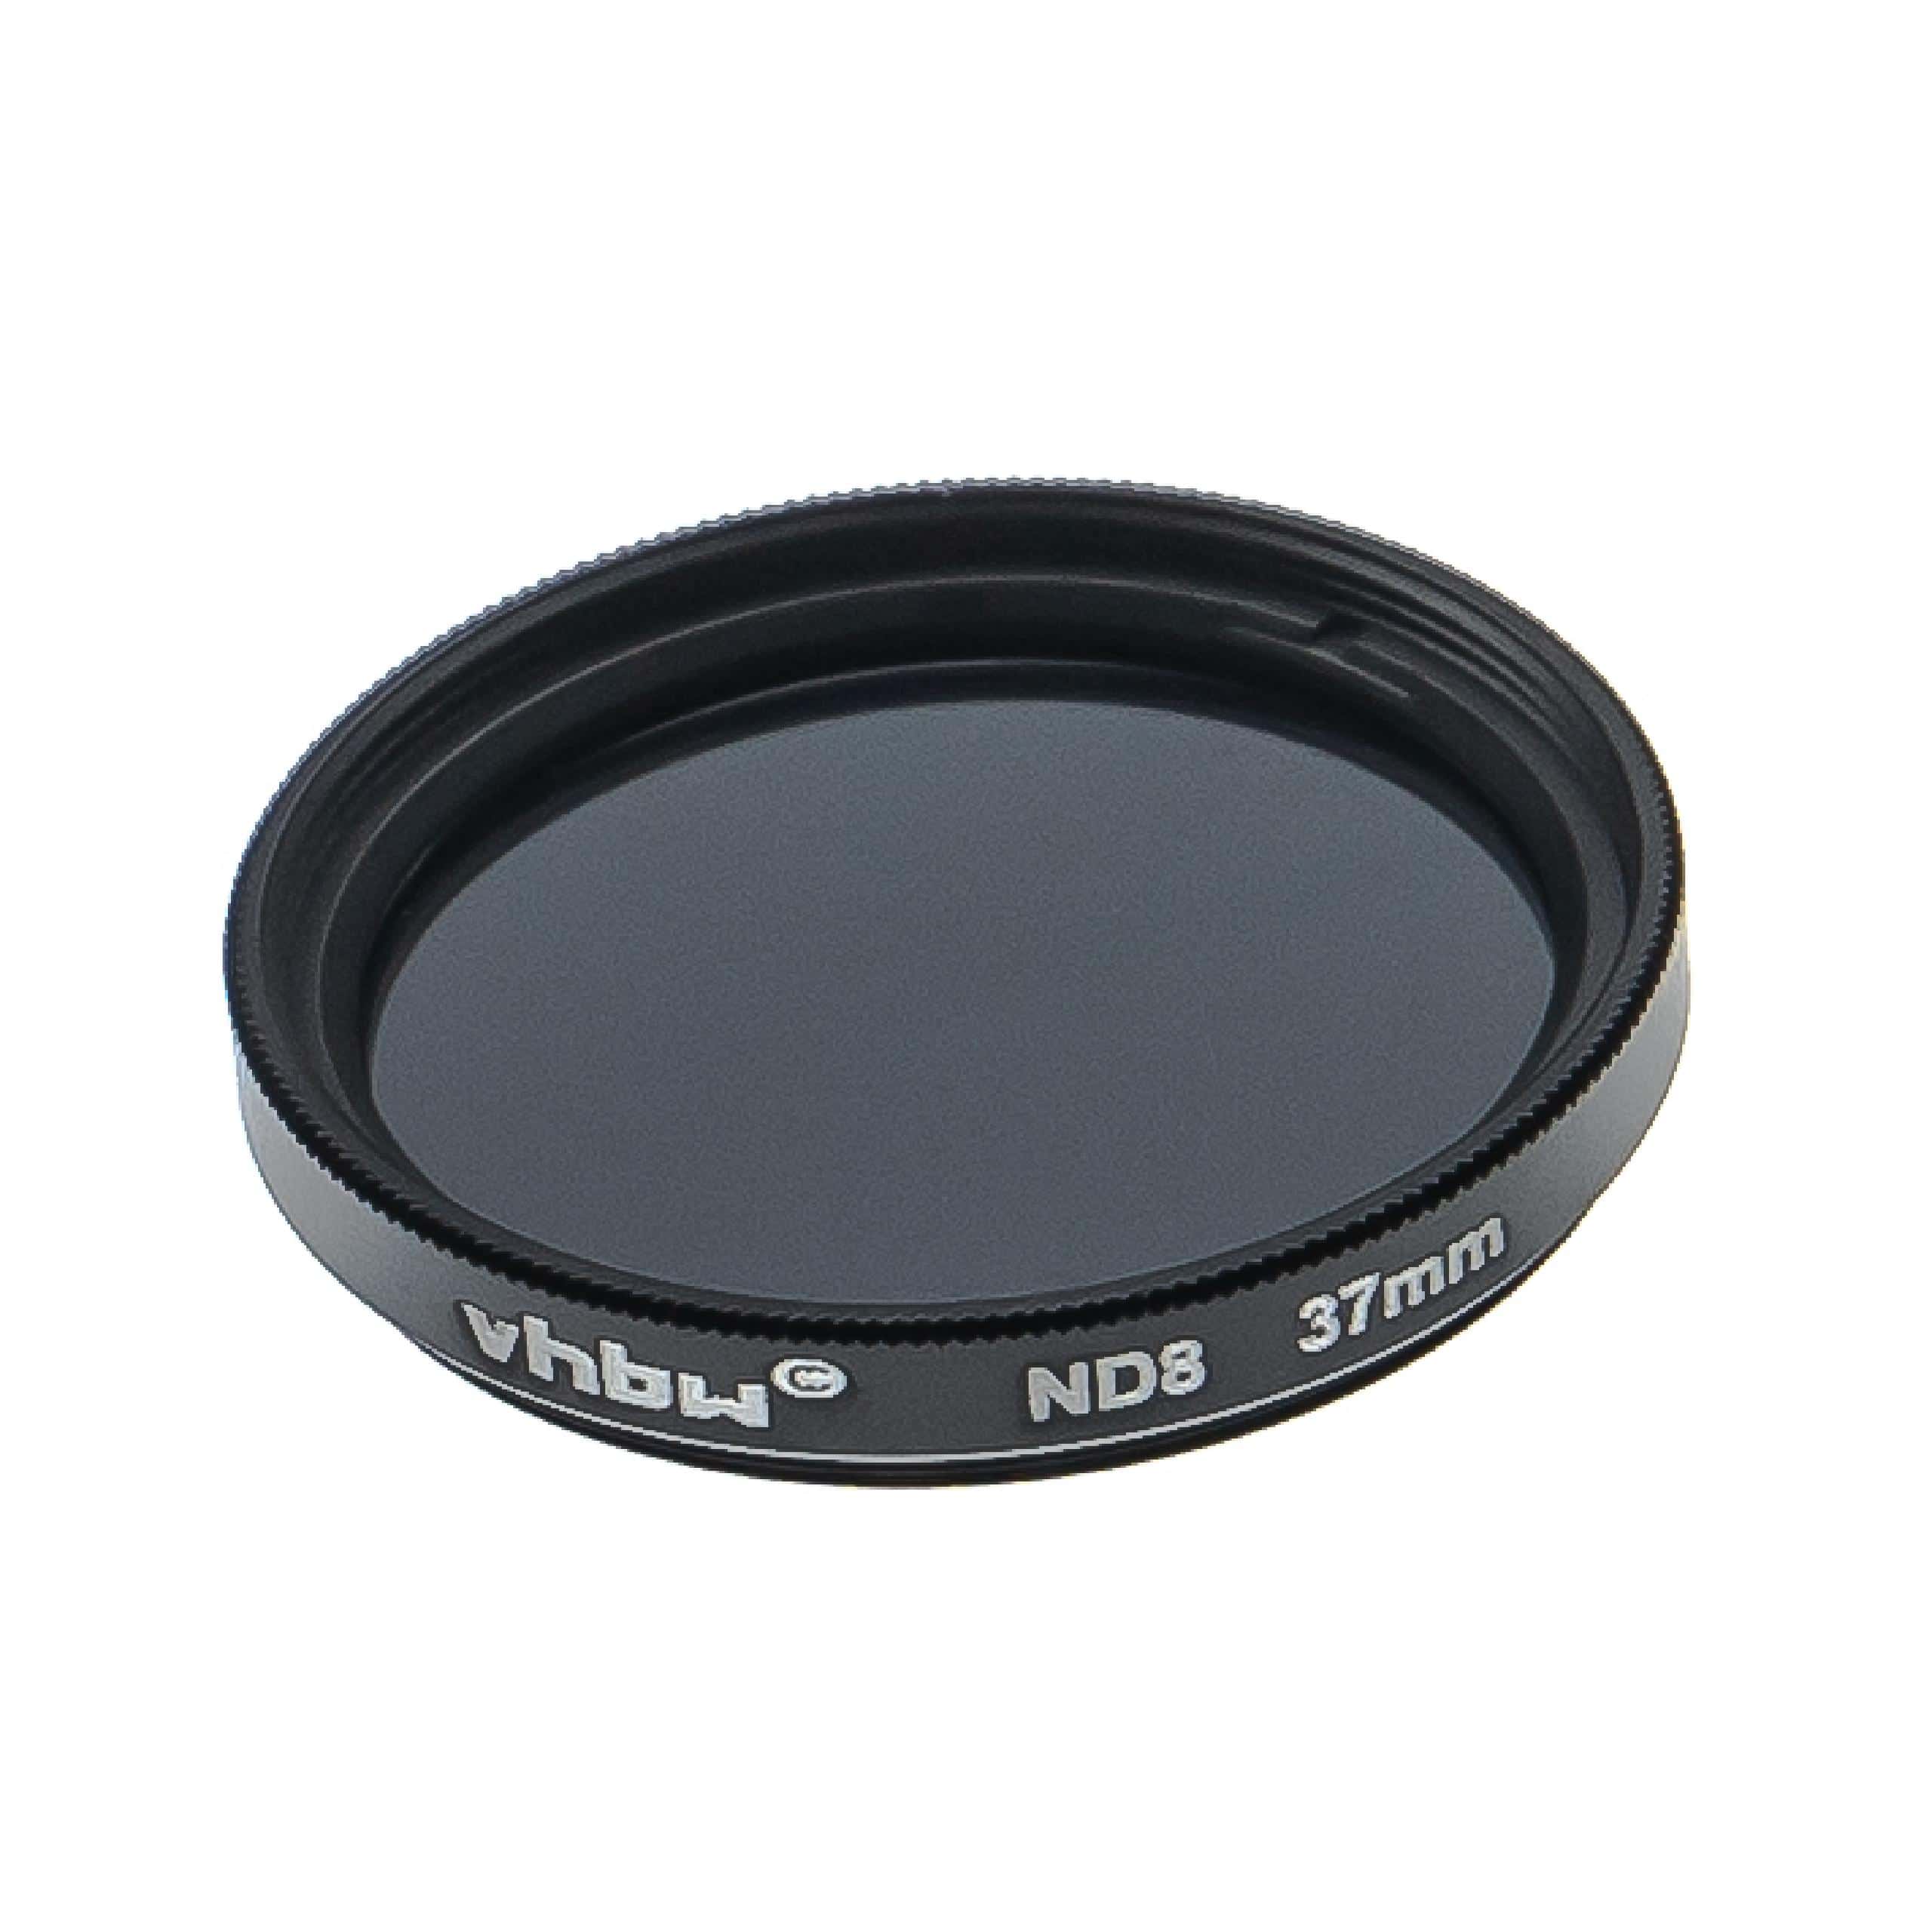 Filtre ND 8 universel pour objectif d'appareil photo de 37 mm de diamètre – Filtre gris